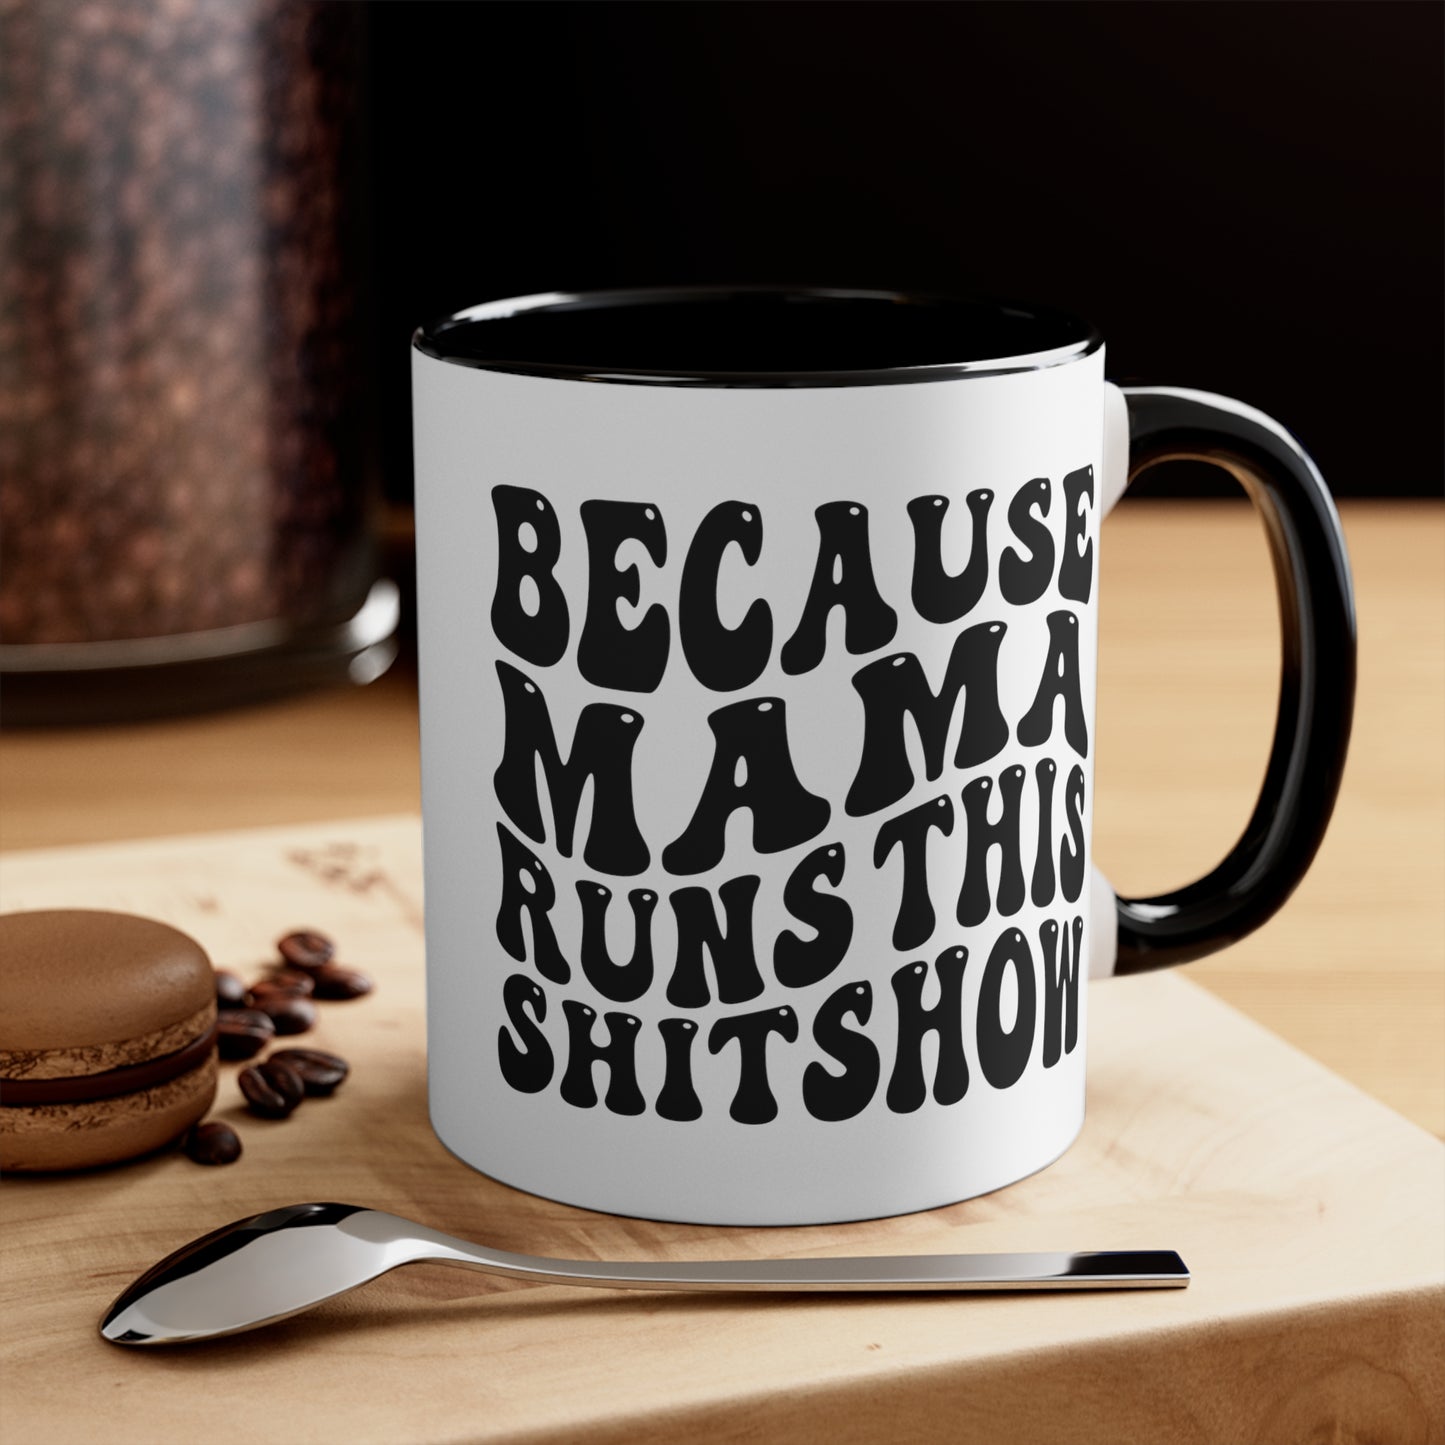 Because Mama Runs This Shitshow Accent Coffee Mug, 11oz